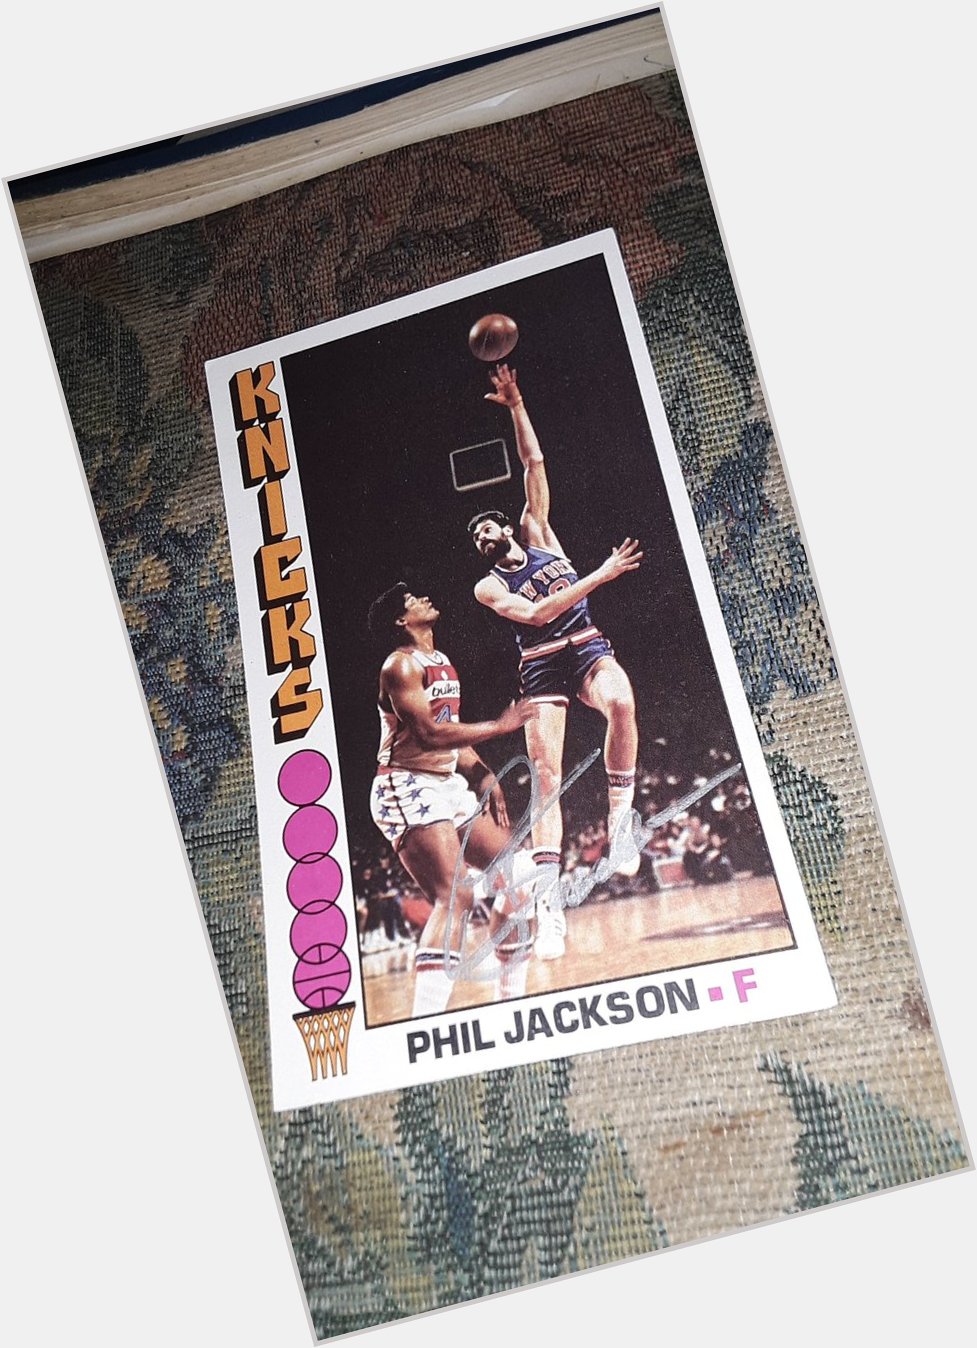  Happy birthday Phil Jackson! 